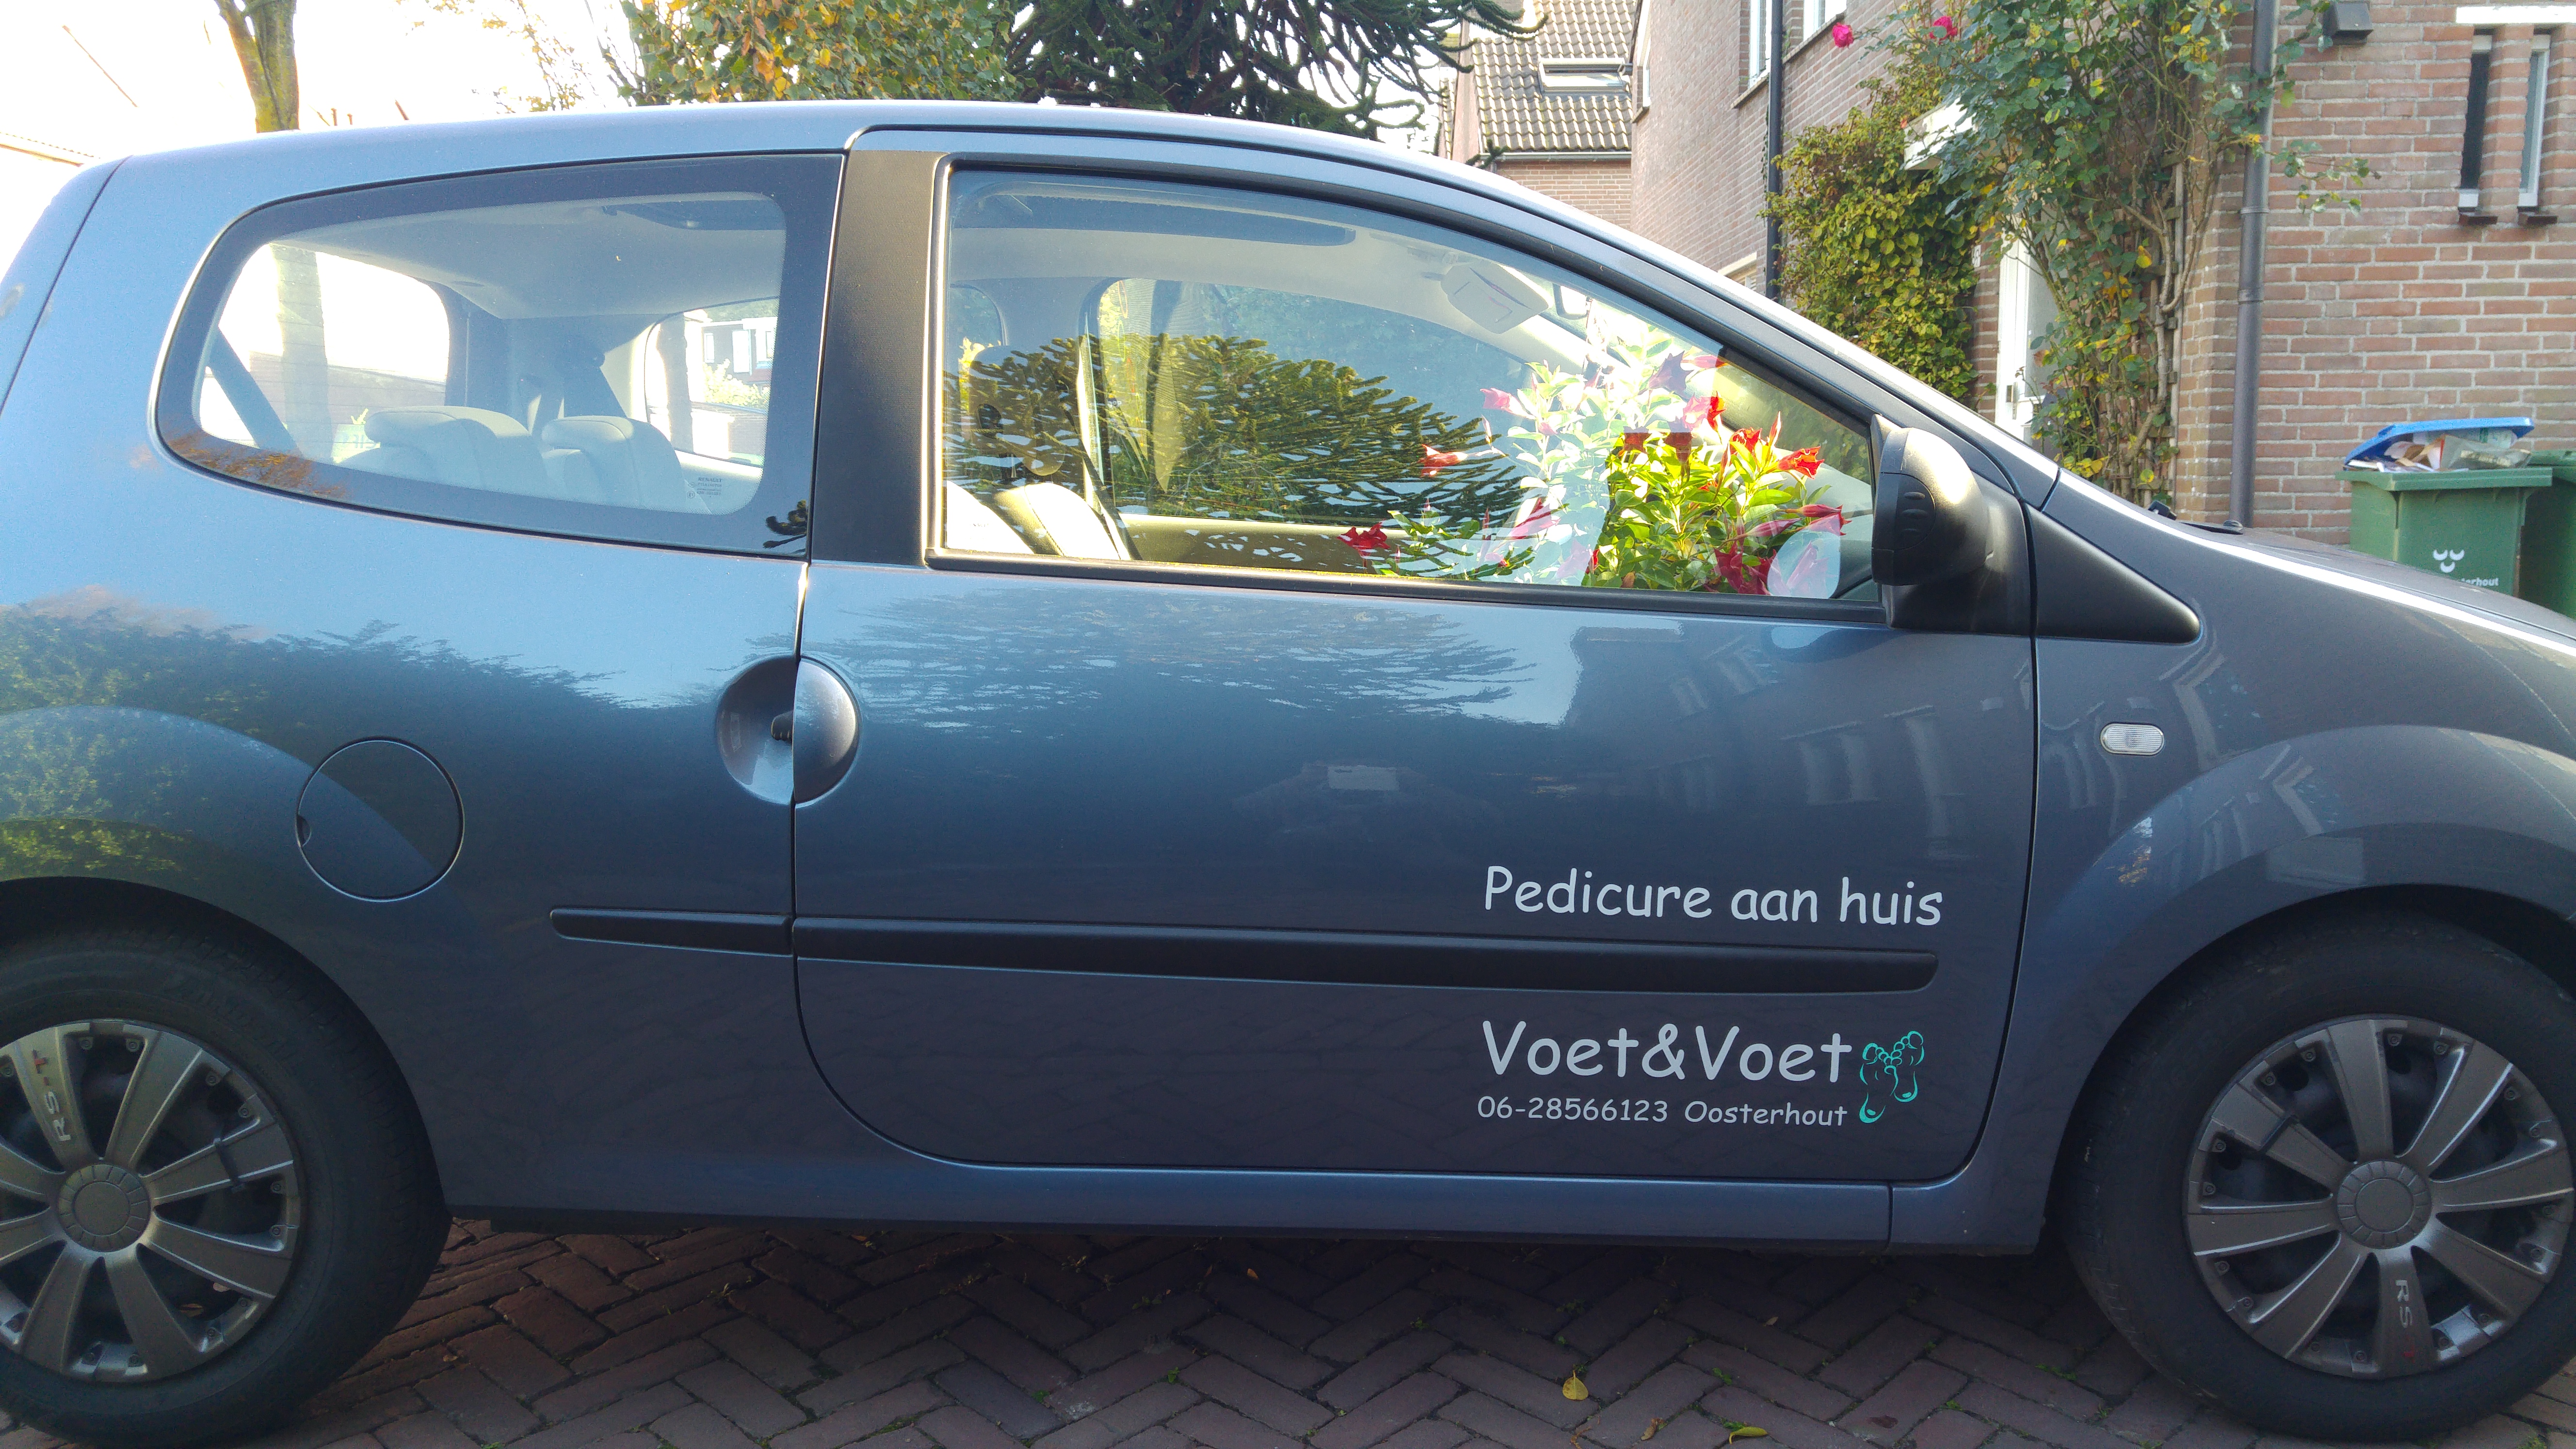 Voet&Voet, Pedicure aan huis - Regio Oosterhout NB